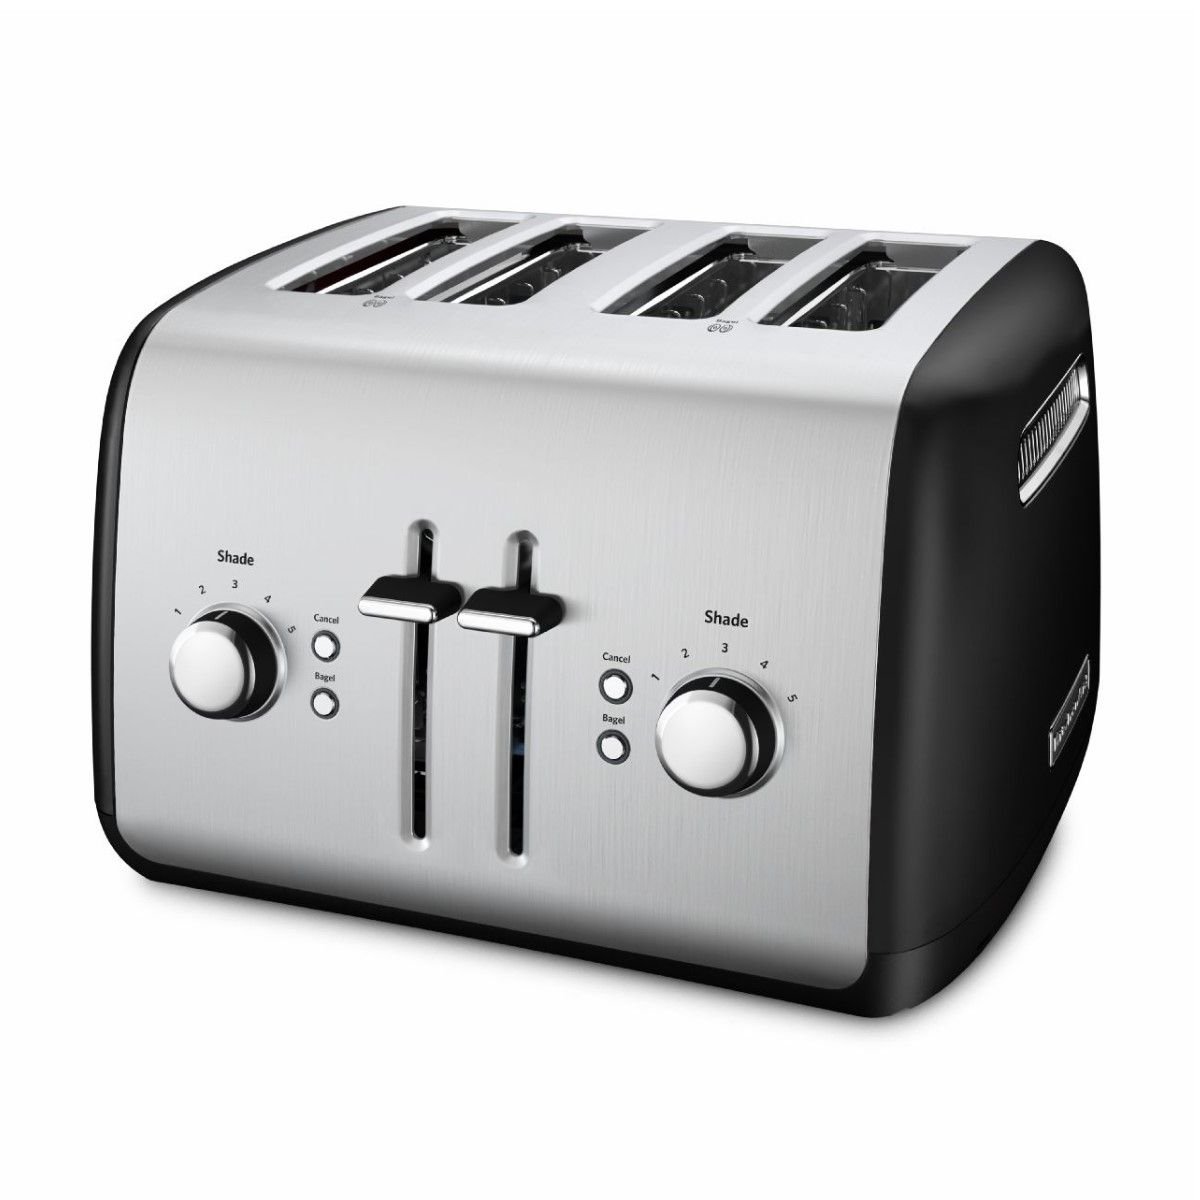 KitchenAid Pro Line Toasters